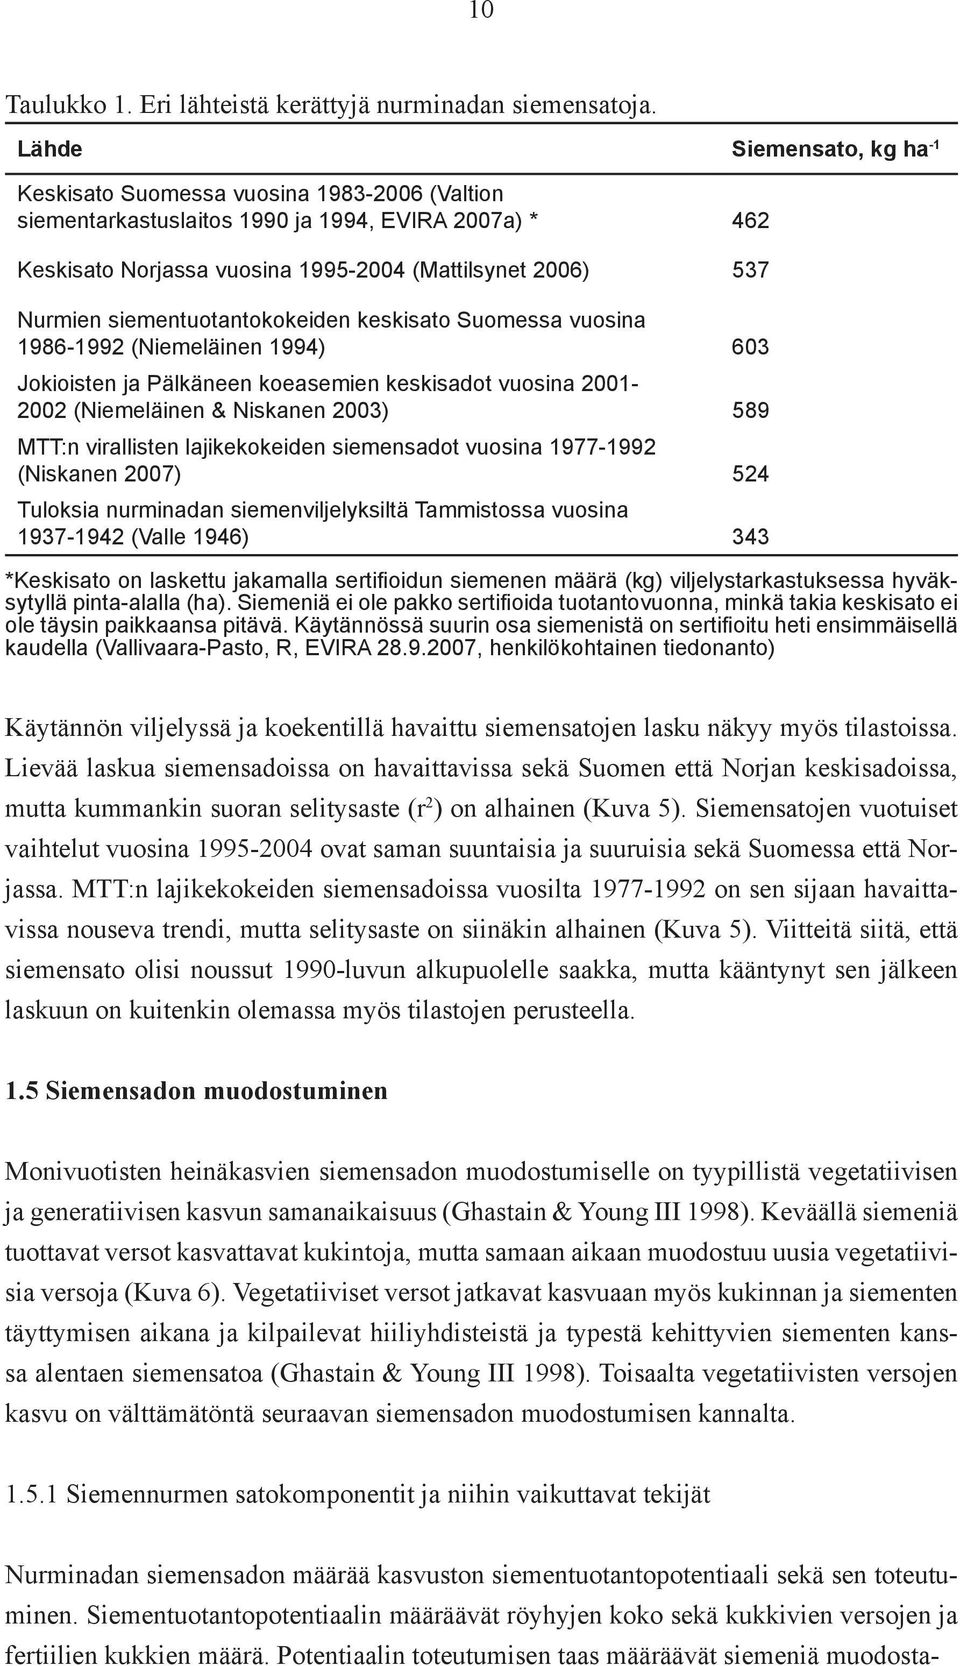 siementuotantokokeiden keskisato Suomessa vuosina 1986-1992 (Niemeläinen 1994) 603 Jokioisten ja Pälkäneen koeasemien keskisadot vuosina 2001-2002 (Niemeläinen & Niskanen 2003) 589 MTT:n virallisten